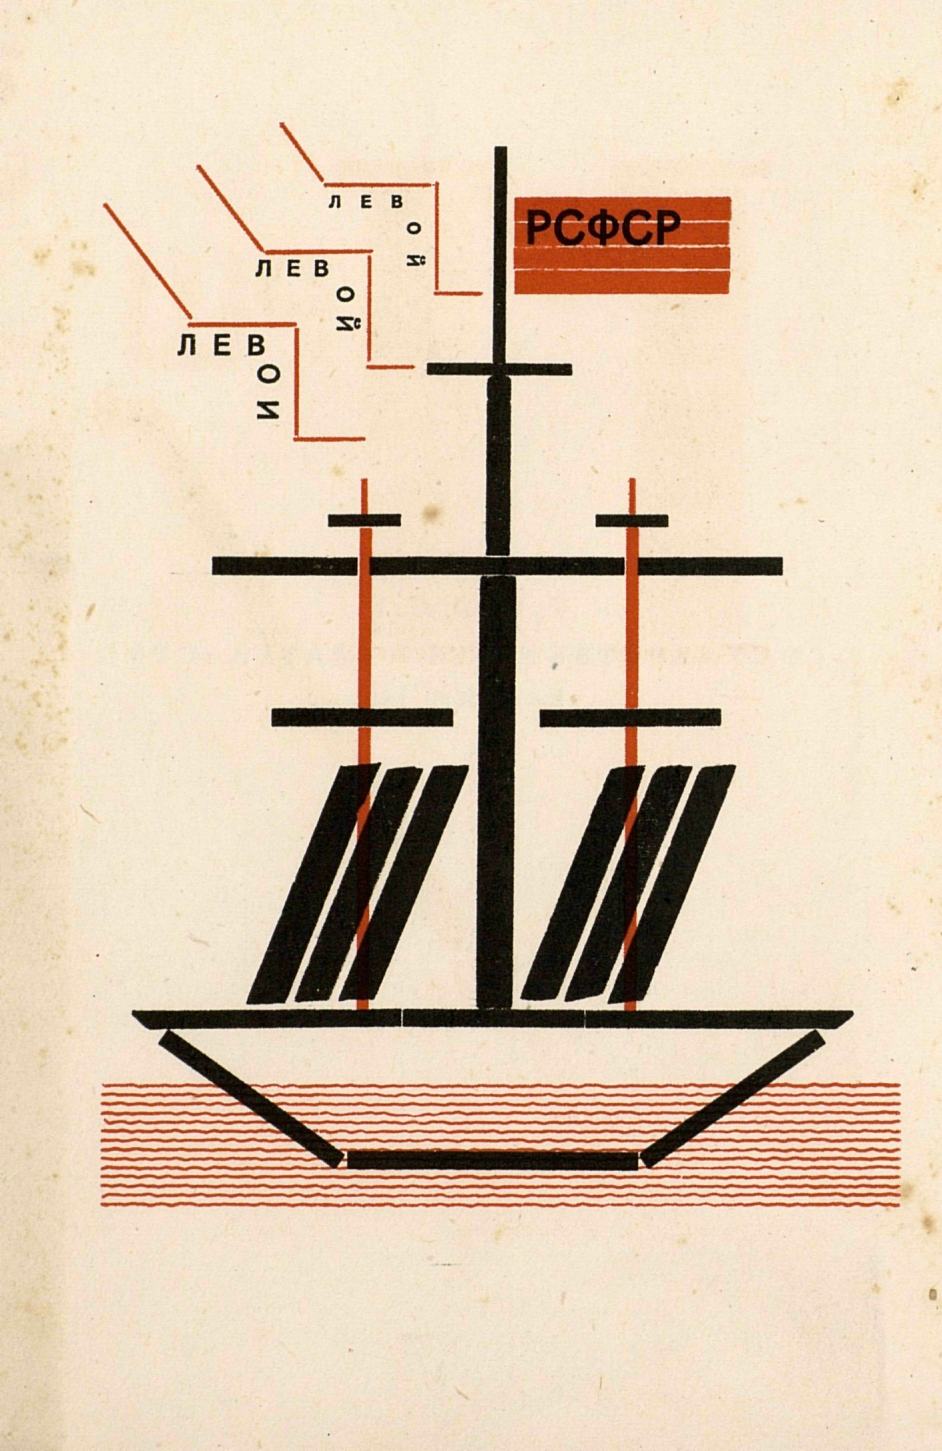 Для голоса / Владимир Маяковский ; Конструктор книги Эл Лисицкий. — Берлин, 1923